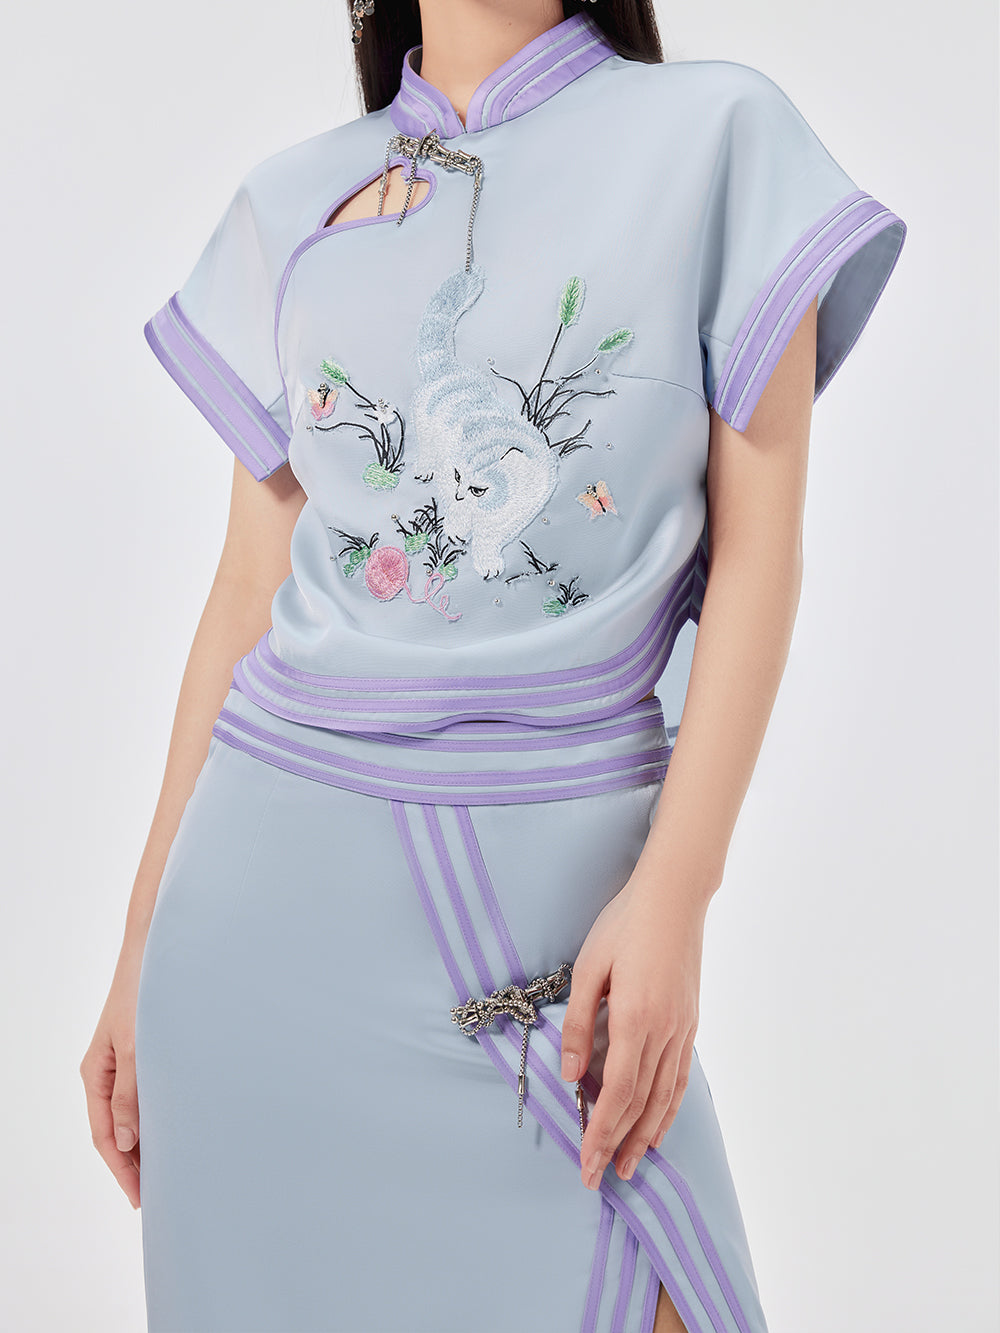 MUKZIN Cat Embroidered Chinese Style Cheongsam Short T-shirt